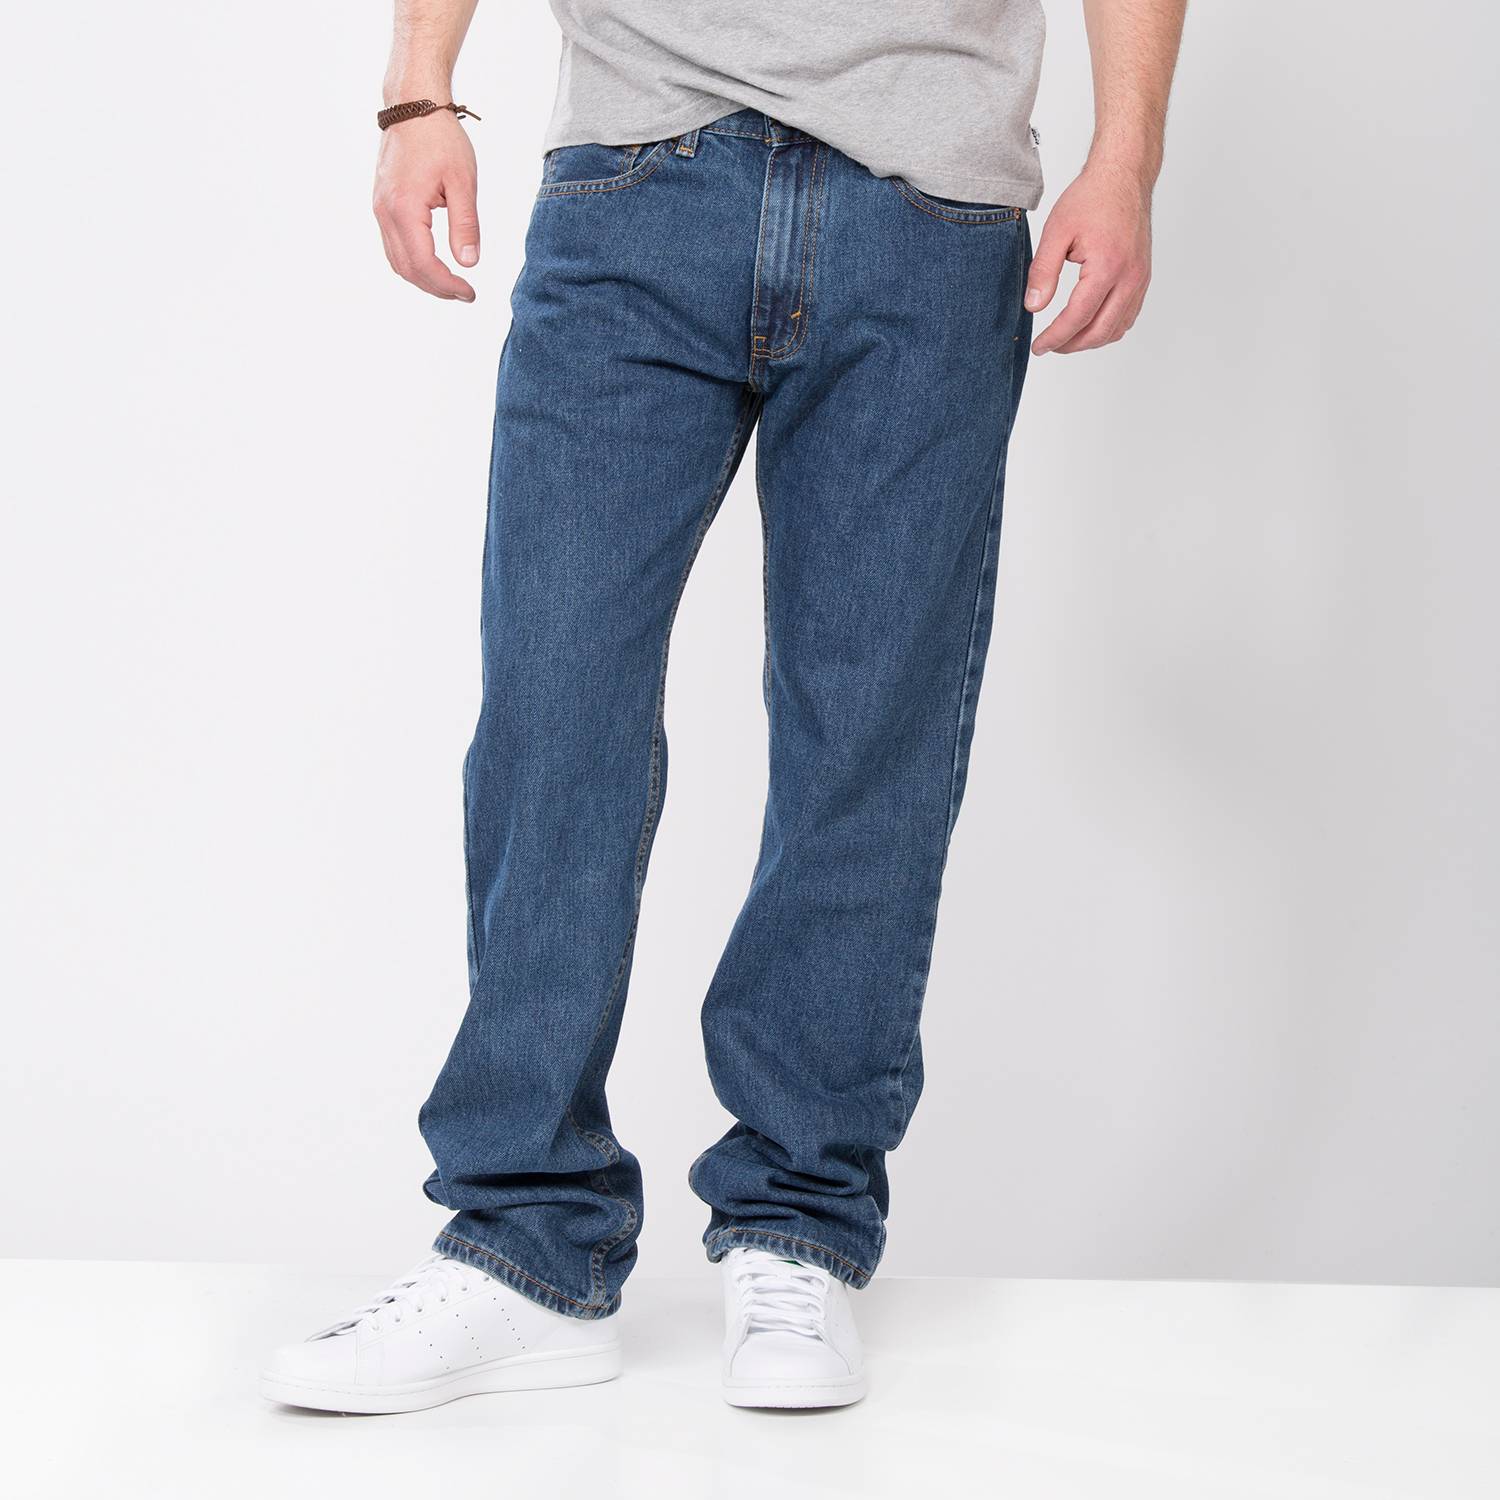 Levis Jeans Regular Fit Hombre | Falabella.com